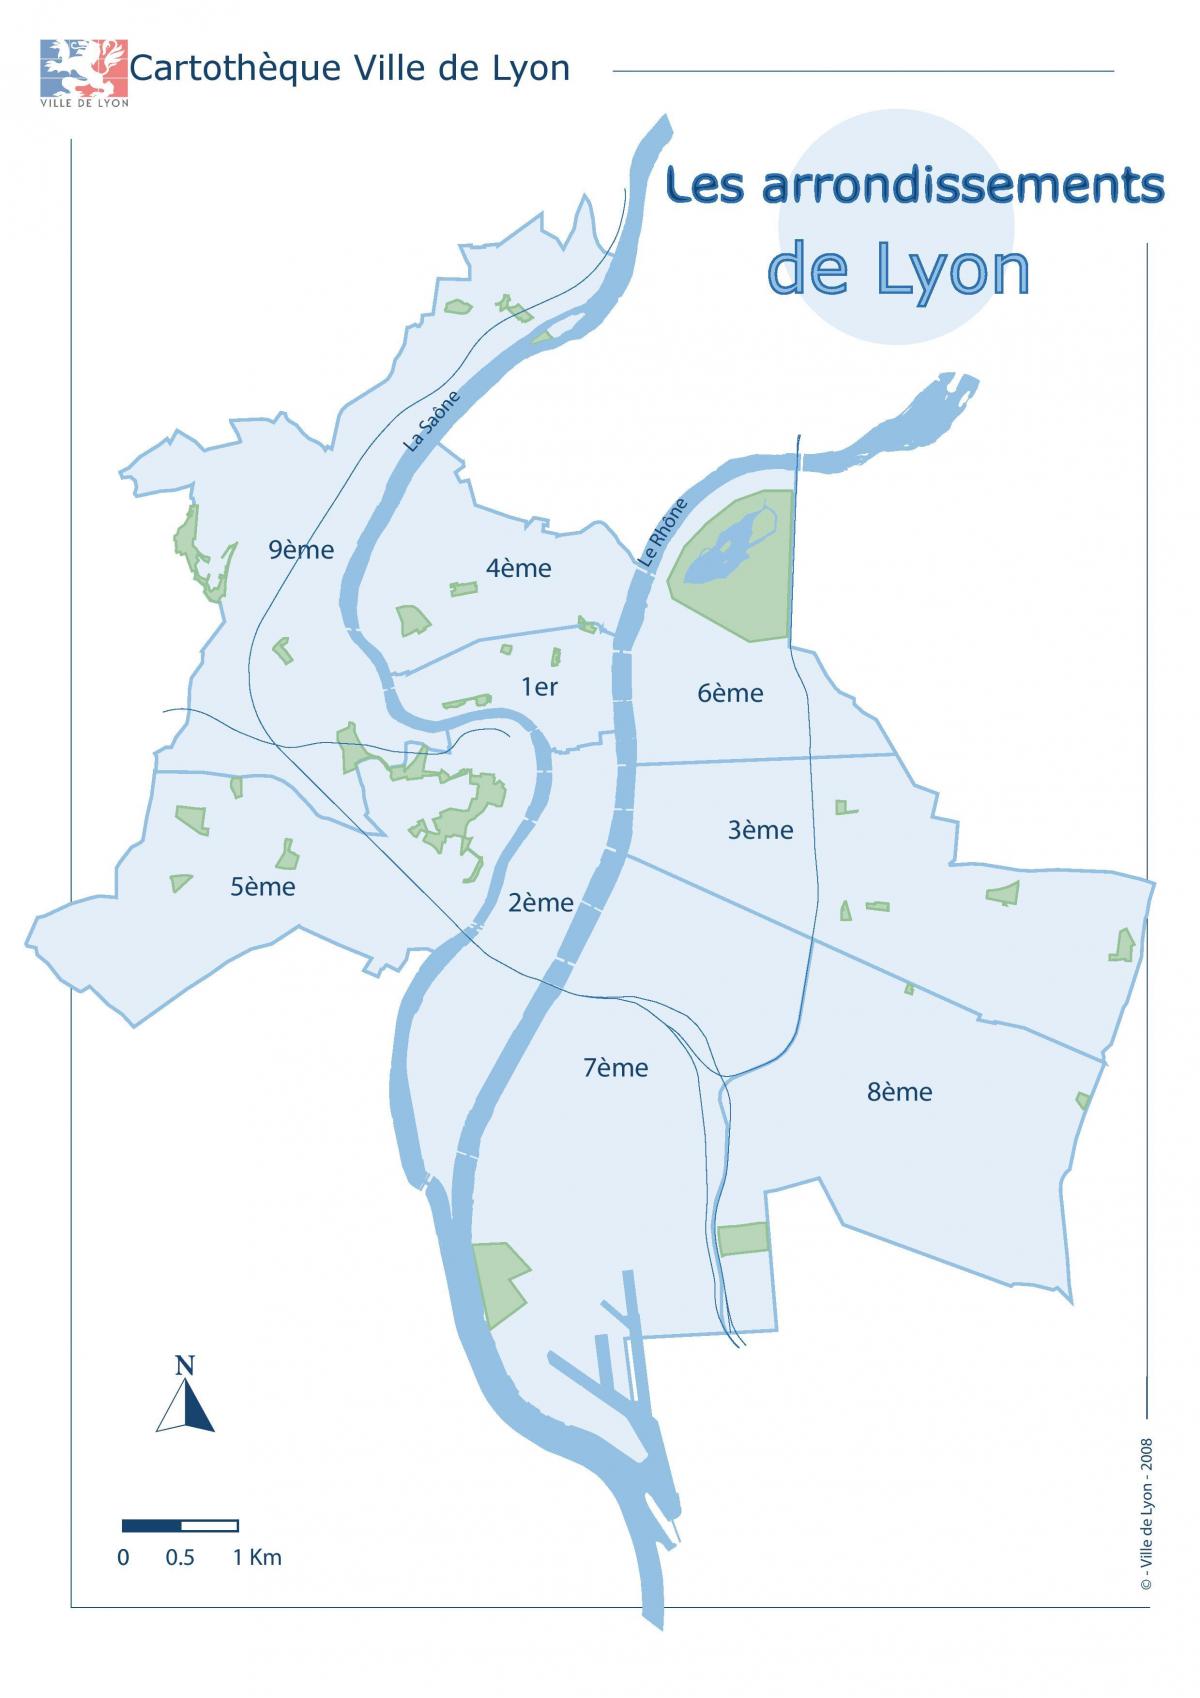 Mappa del distretto di Lione